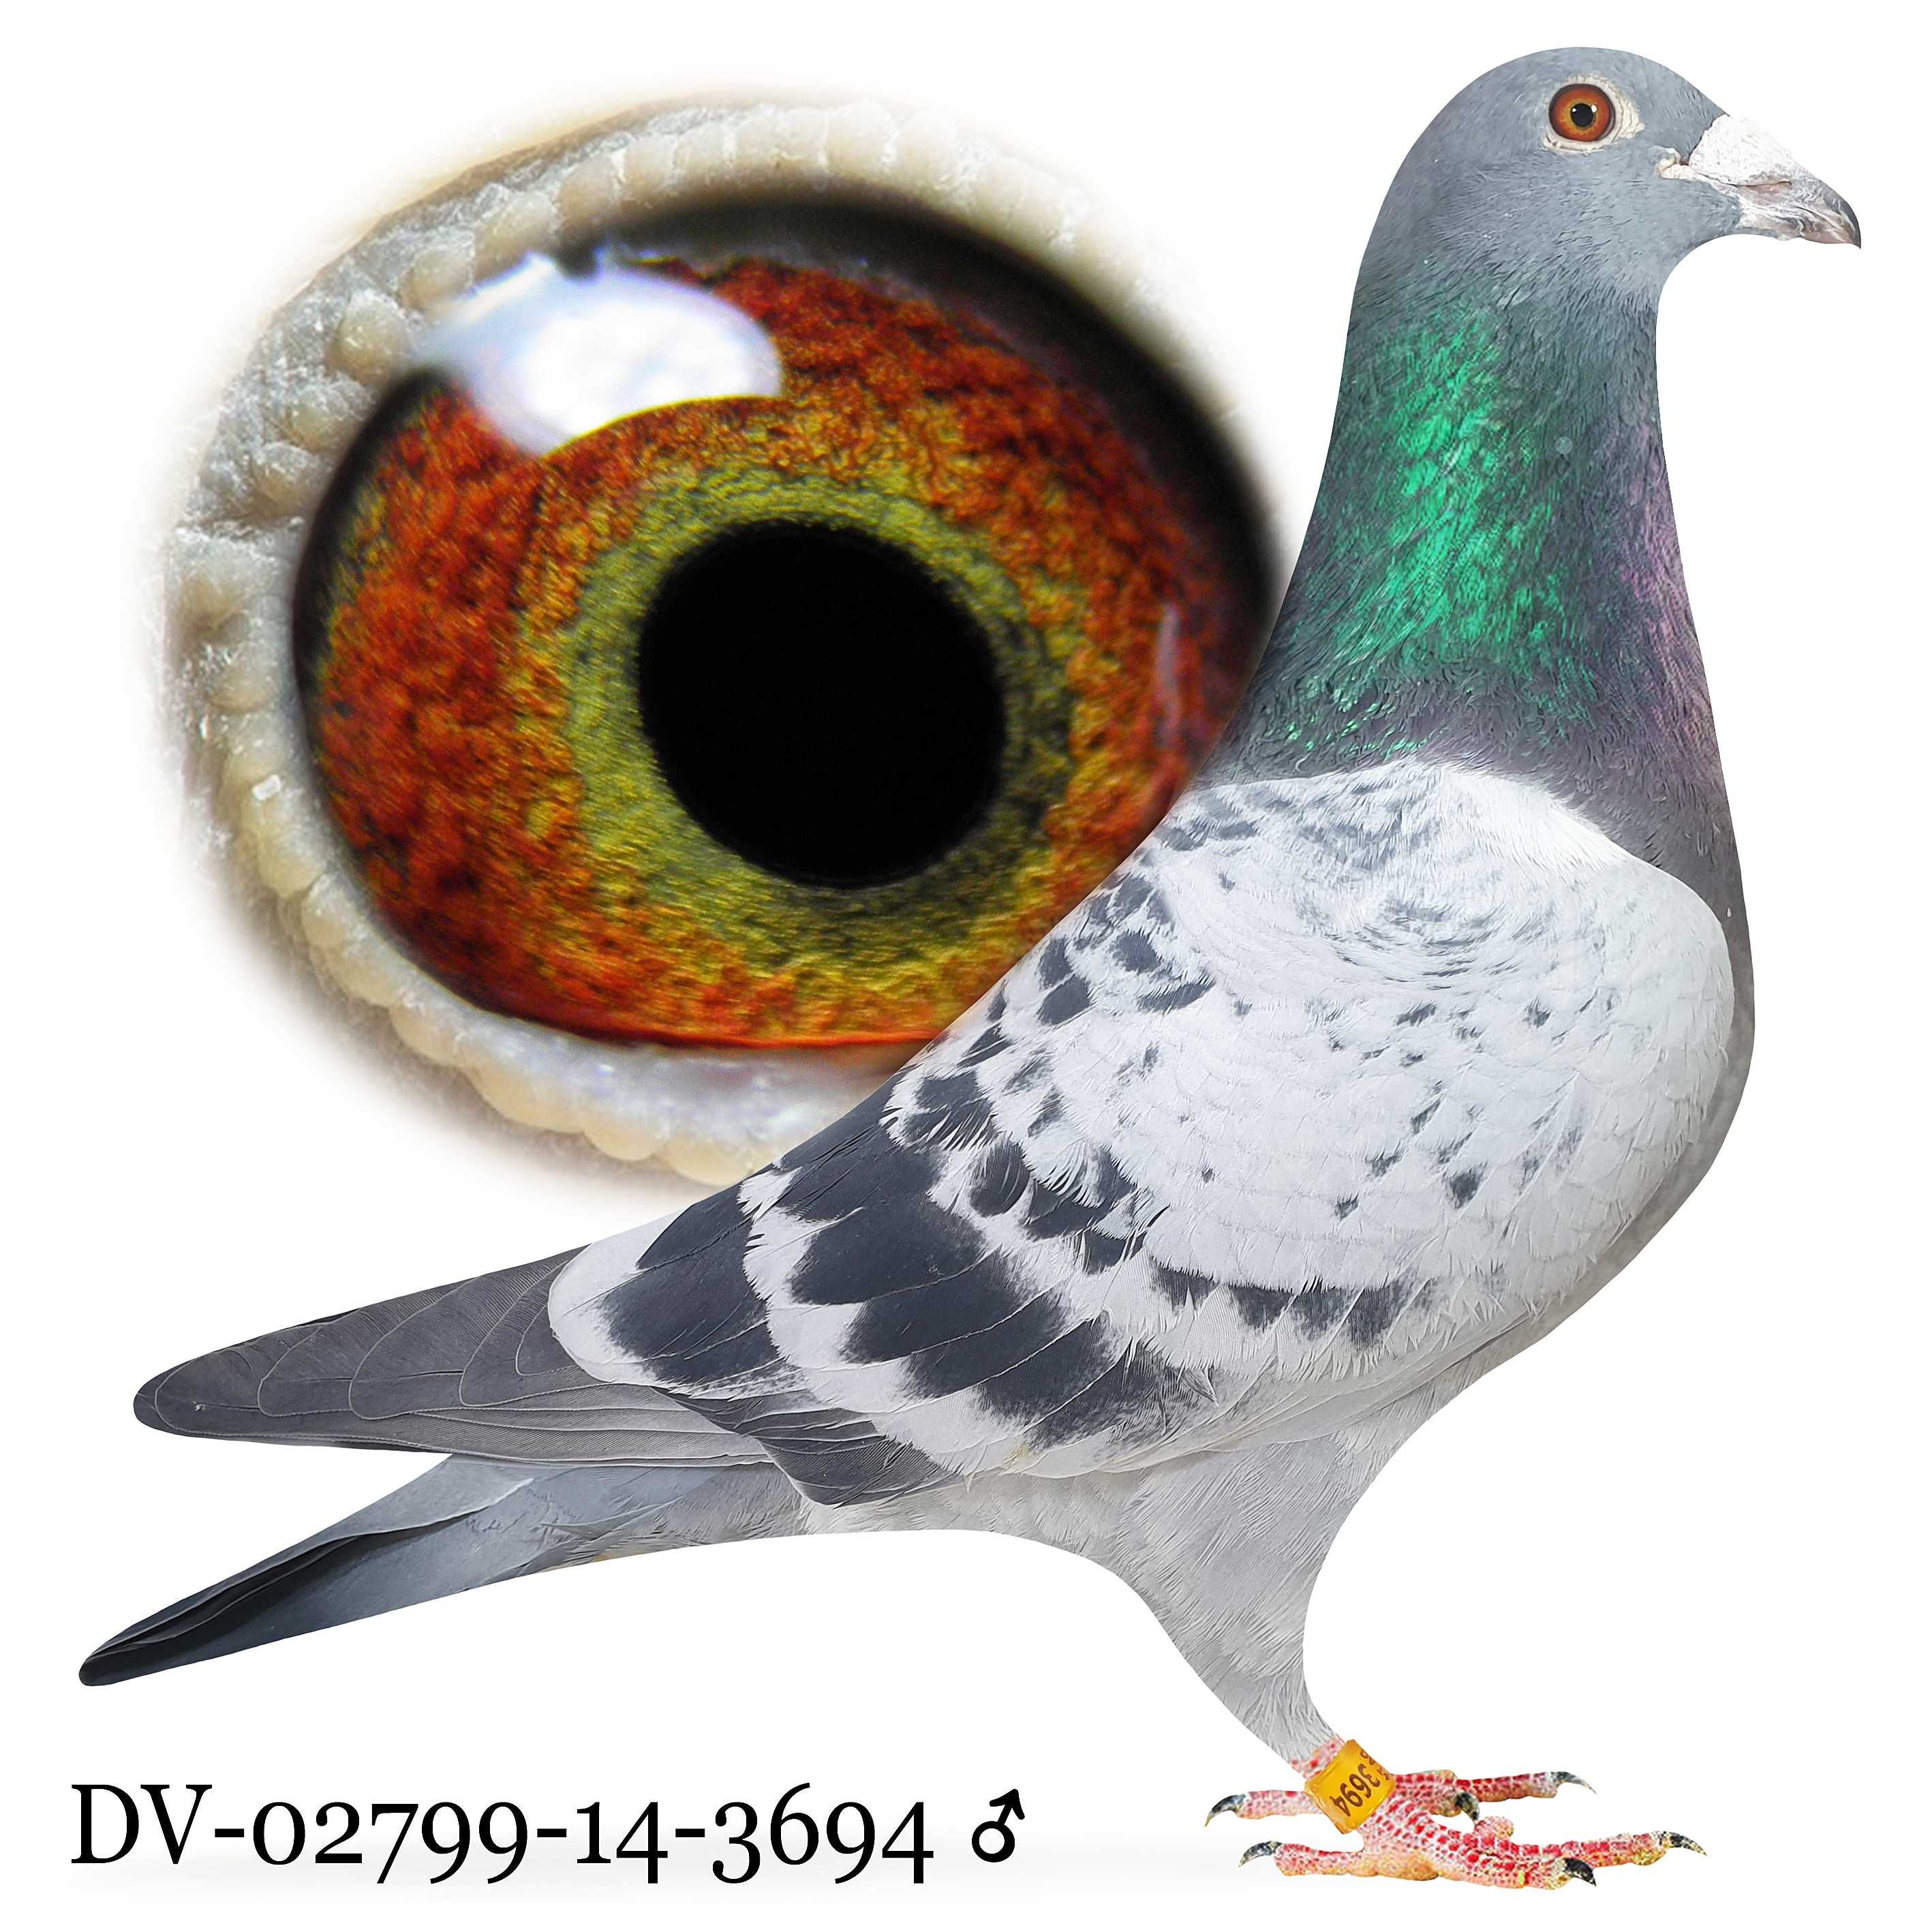 Młode 2024 Para nr 32 Stichelbout/Heremans cust gołąb gołębie pocztowe